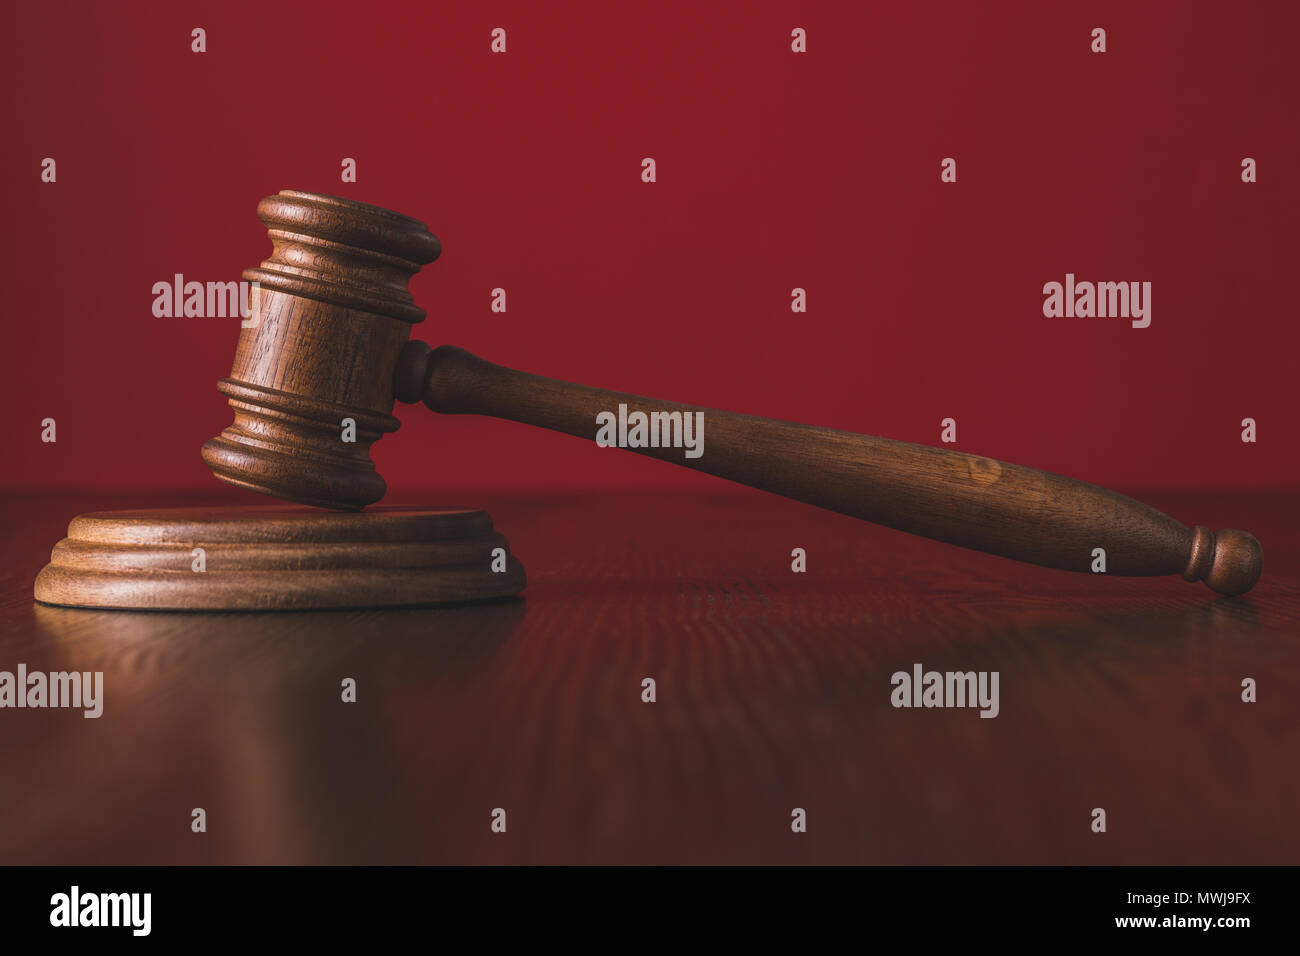 Las sentencias sobre la madera martillo mesa enfrente de fondo rojo, el concepto de derecho Foto de stock